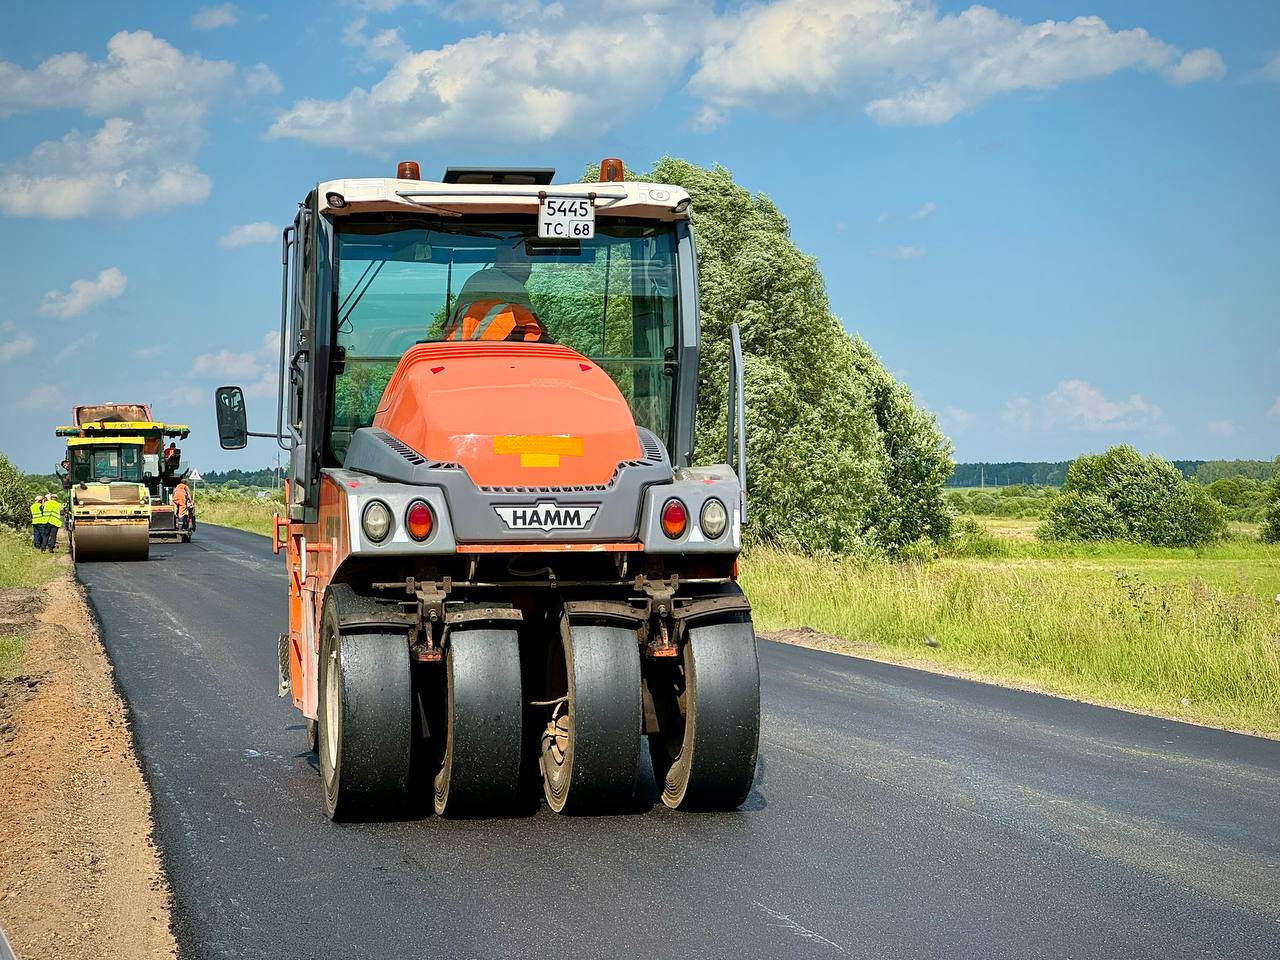 Министр транспорта области Александр Шпиренко проконтролировал  ход ремонта дорожного покрытия  дороги Калуга - Мосальск - Барятино - Киров.